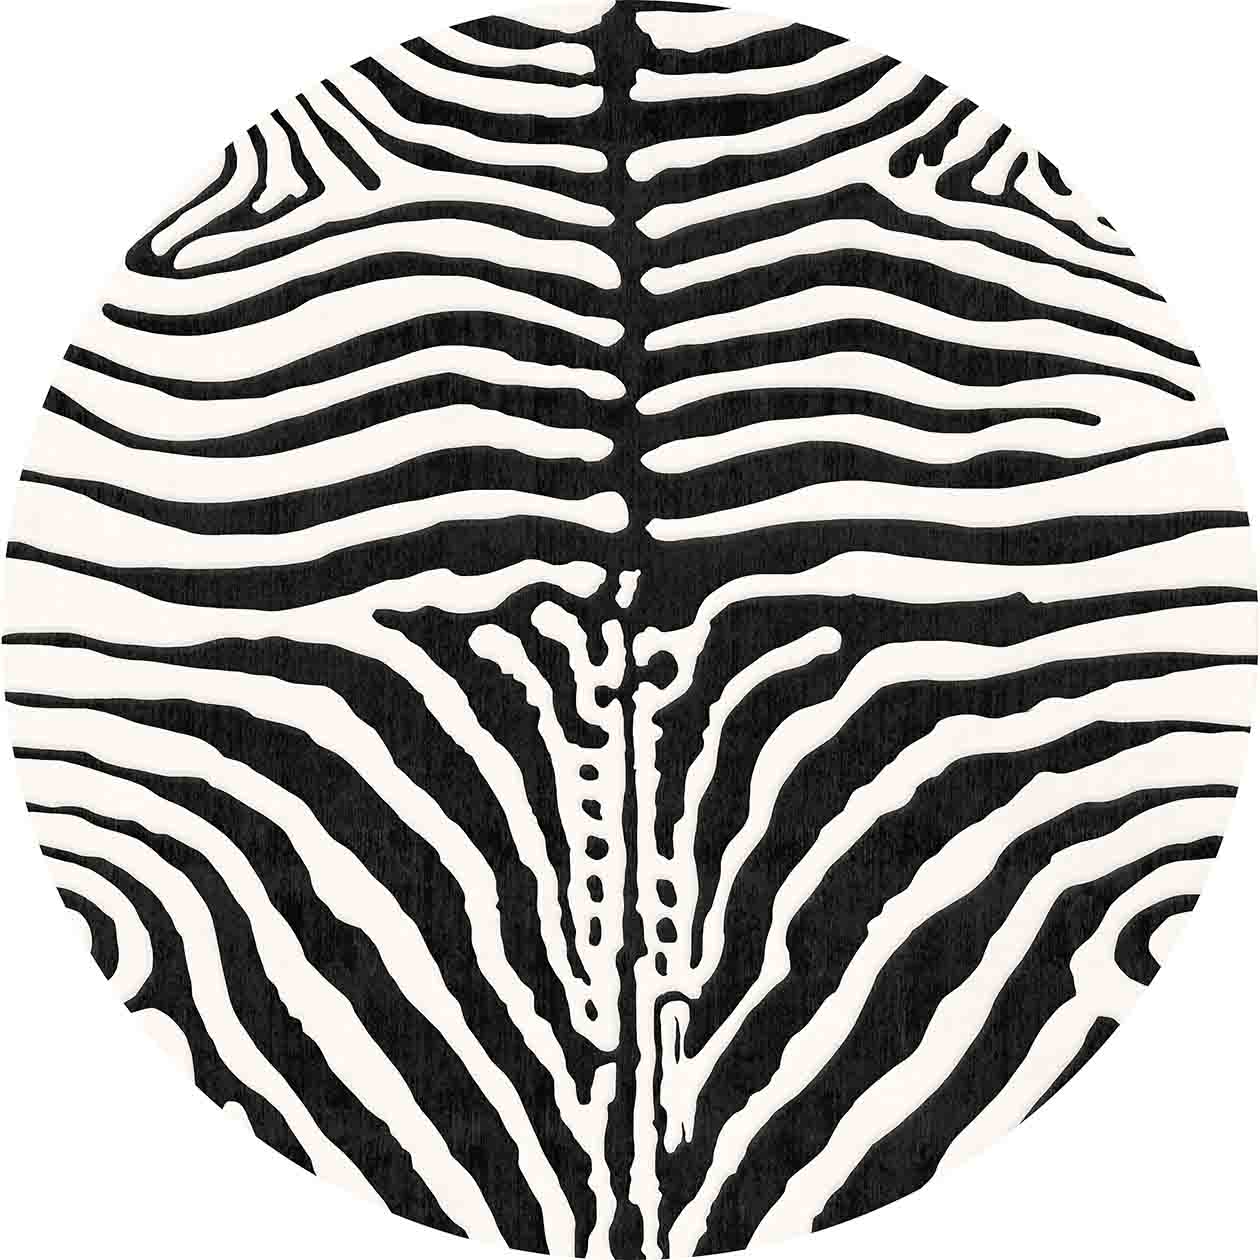 Tappeto rotondo - Zebra (nero/bianco)